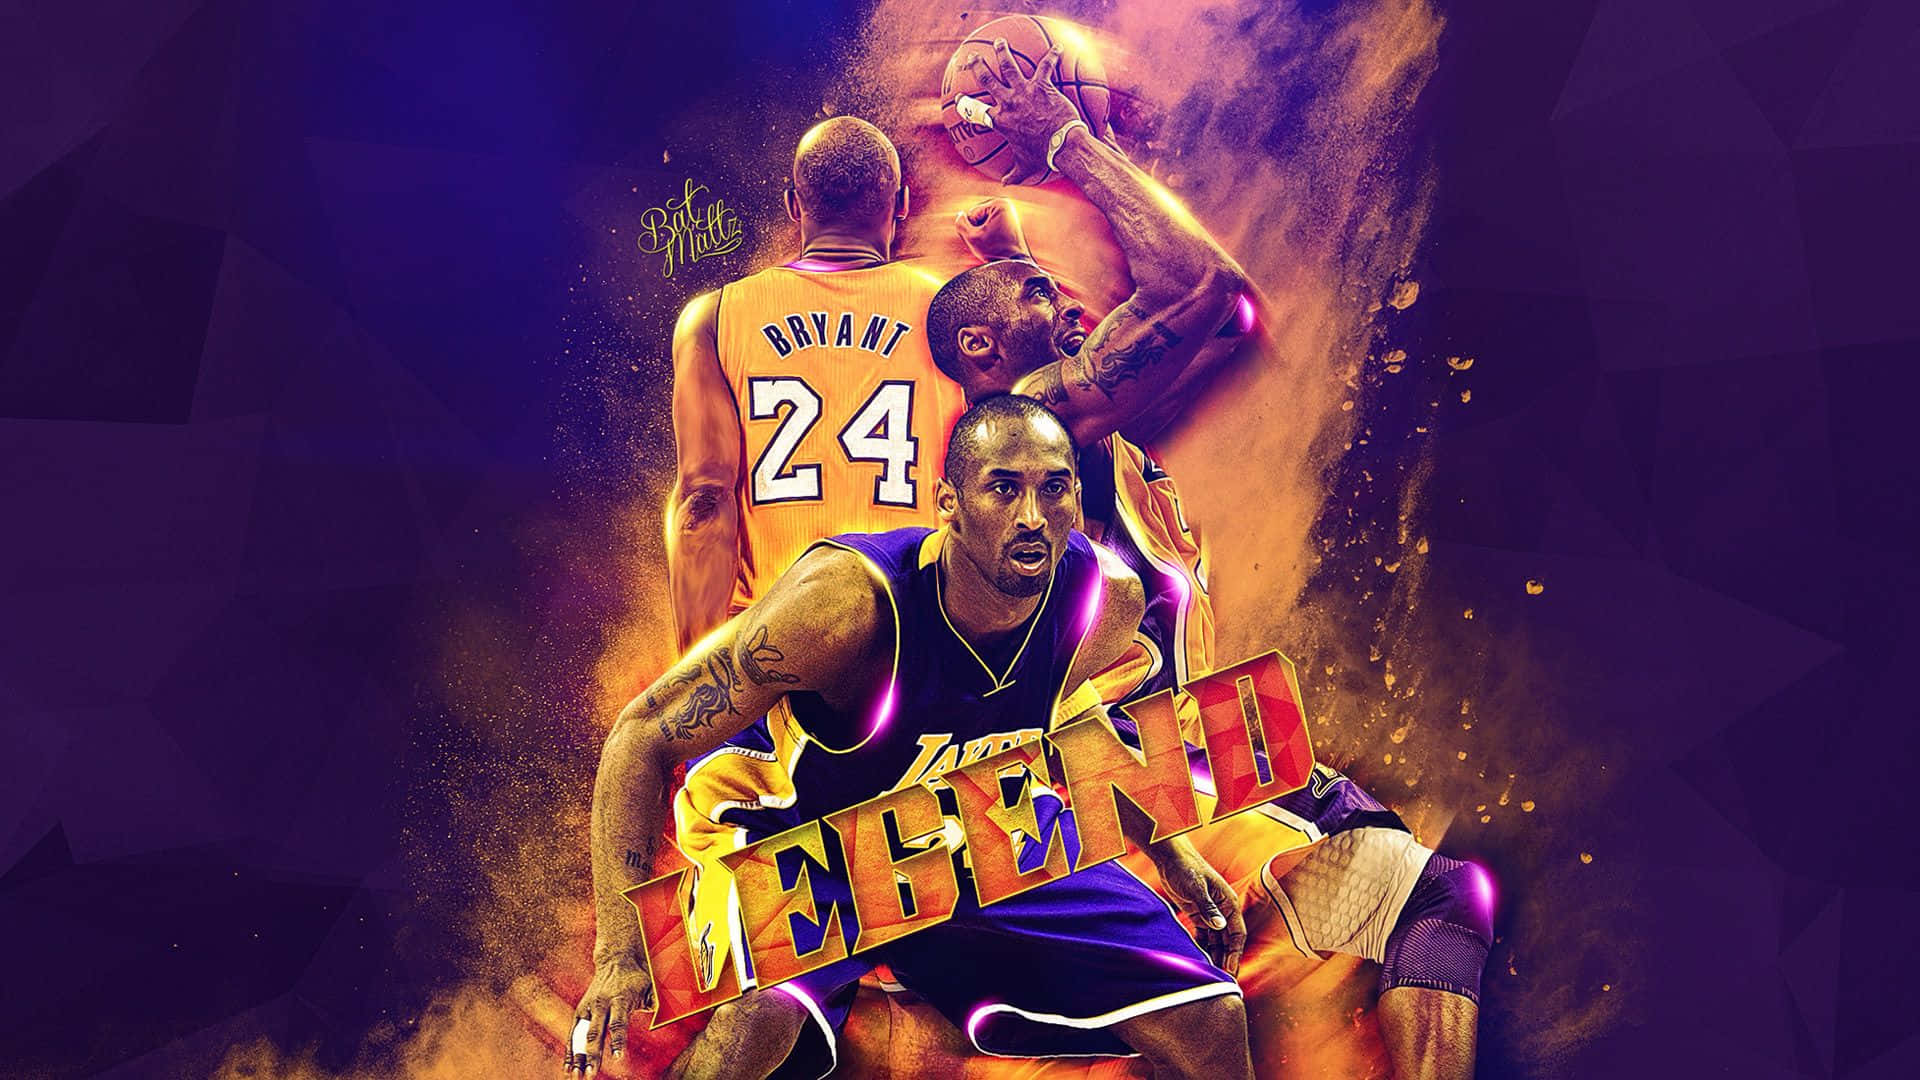 Kobe Bryant, Basketball Legend